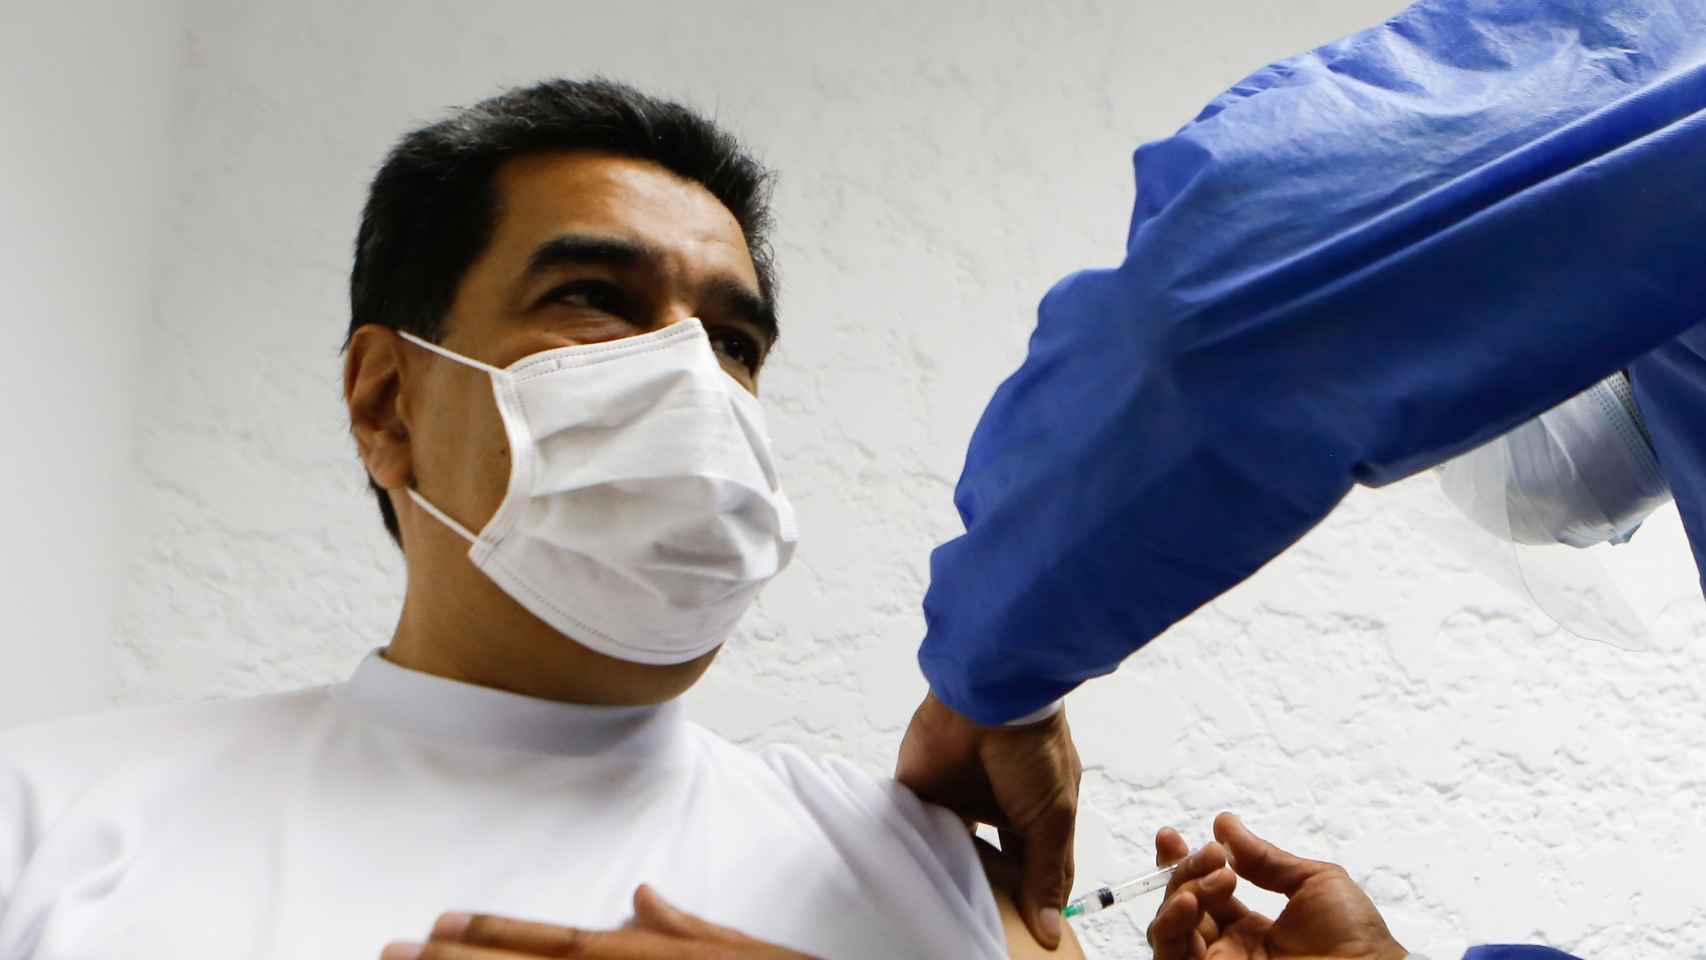 Nicolás Maduro en el momento en el que le administran la vacuna rusa.